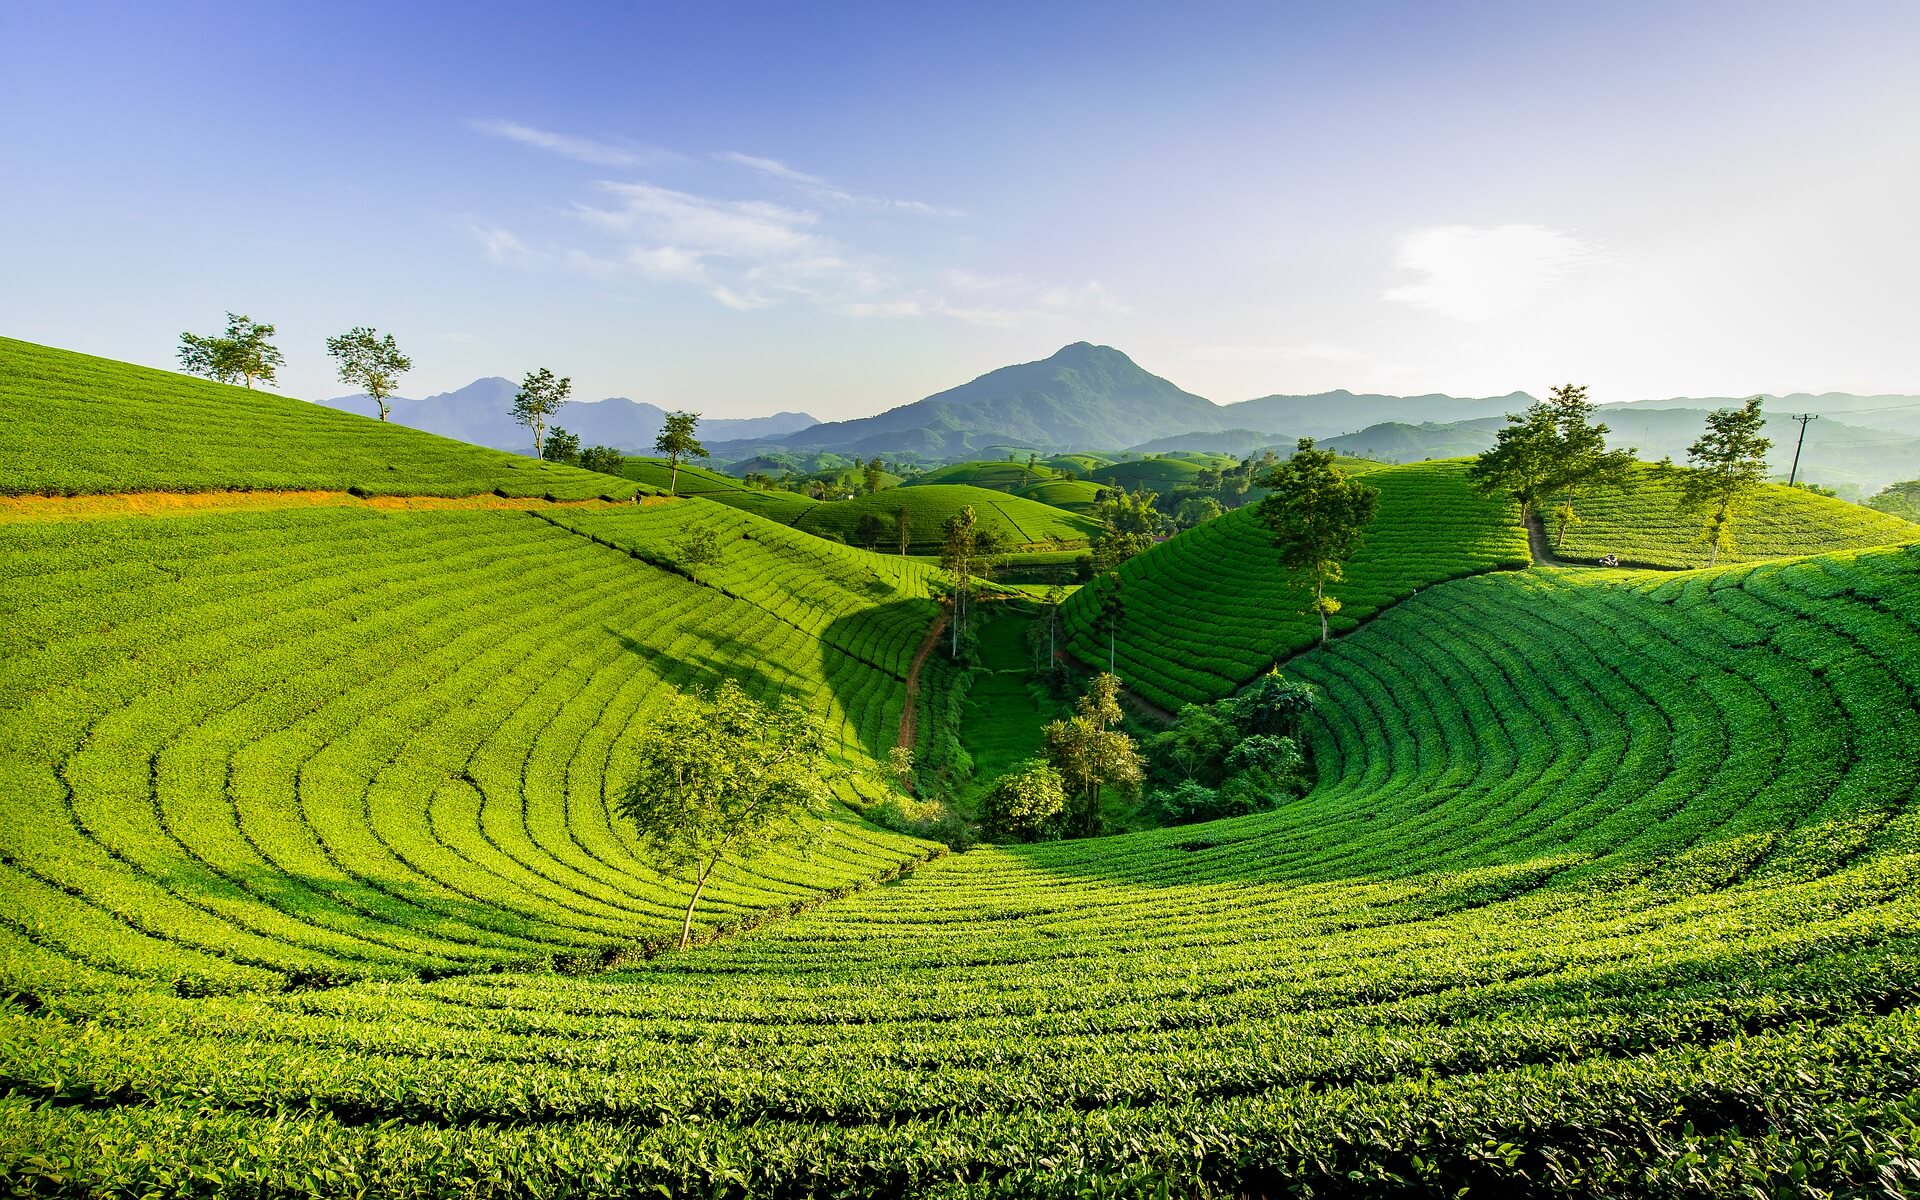 Hügel (Bild von Son Hoa Nguyen auf Pixabay)